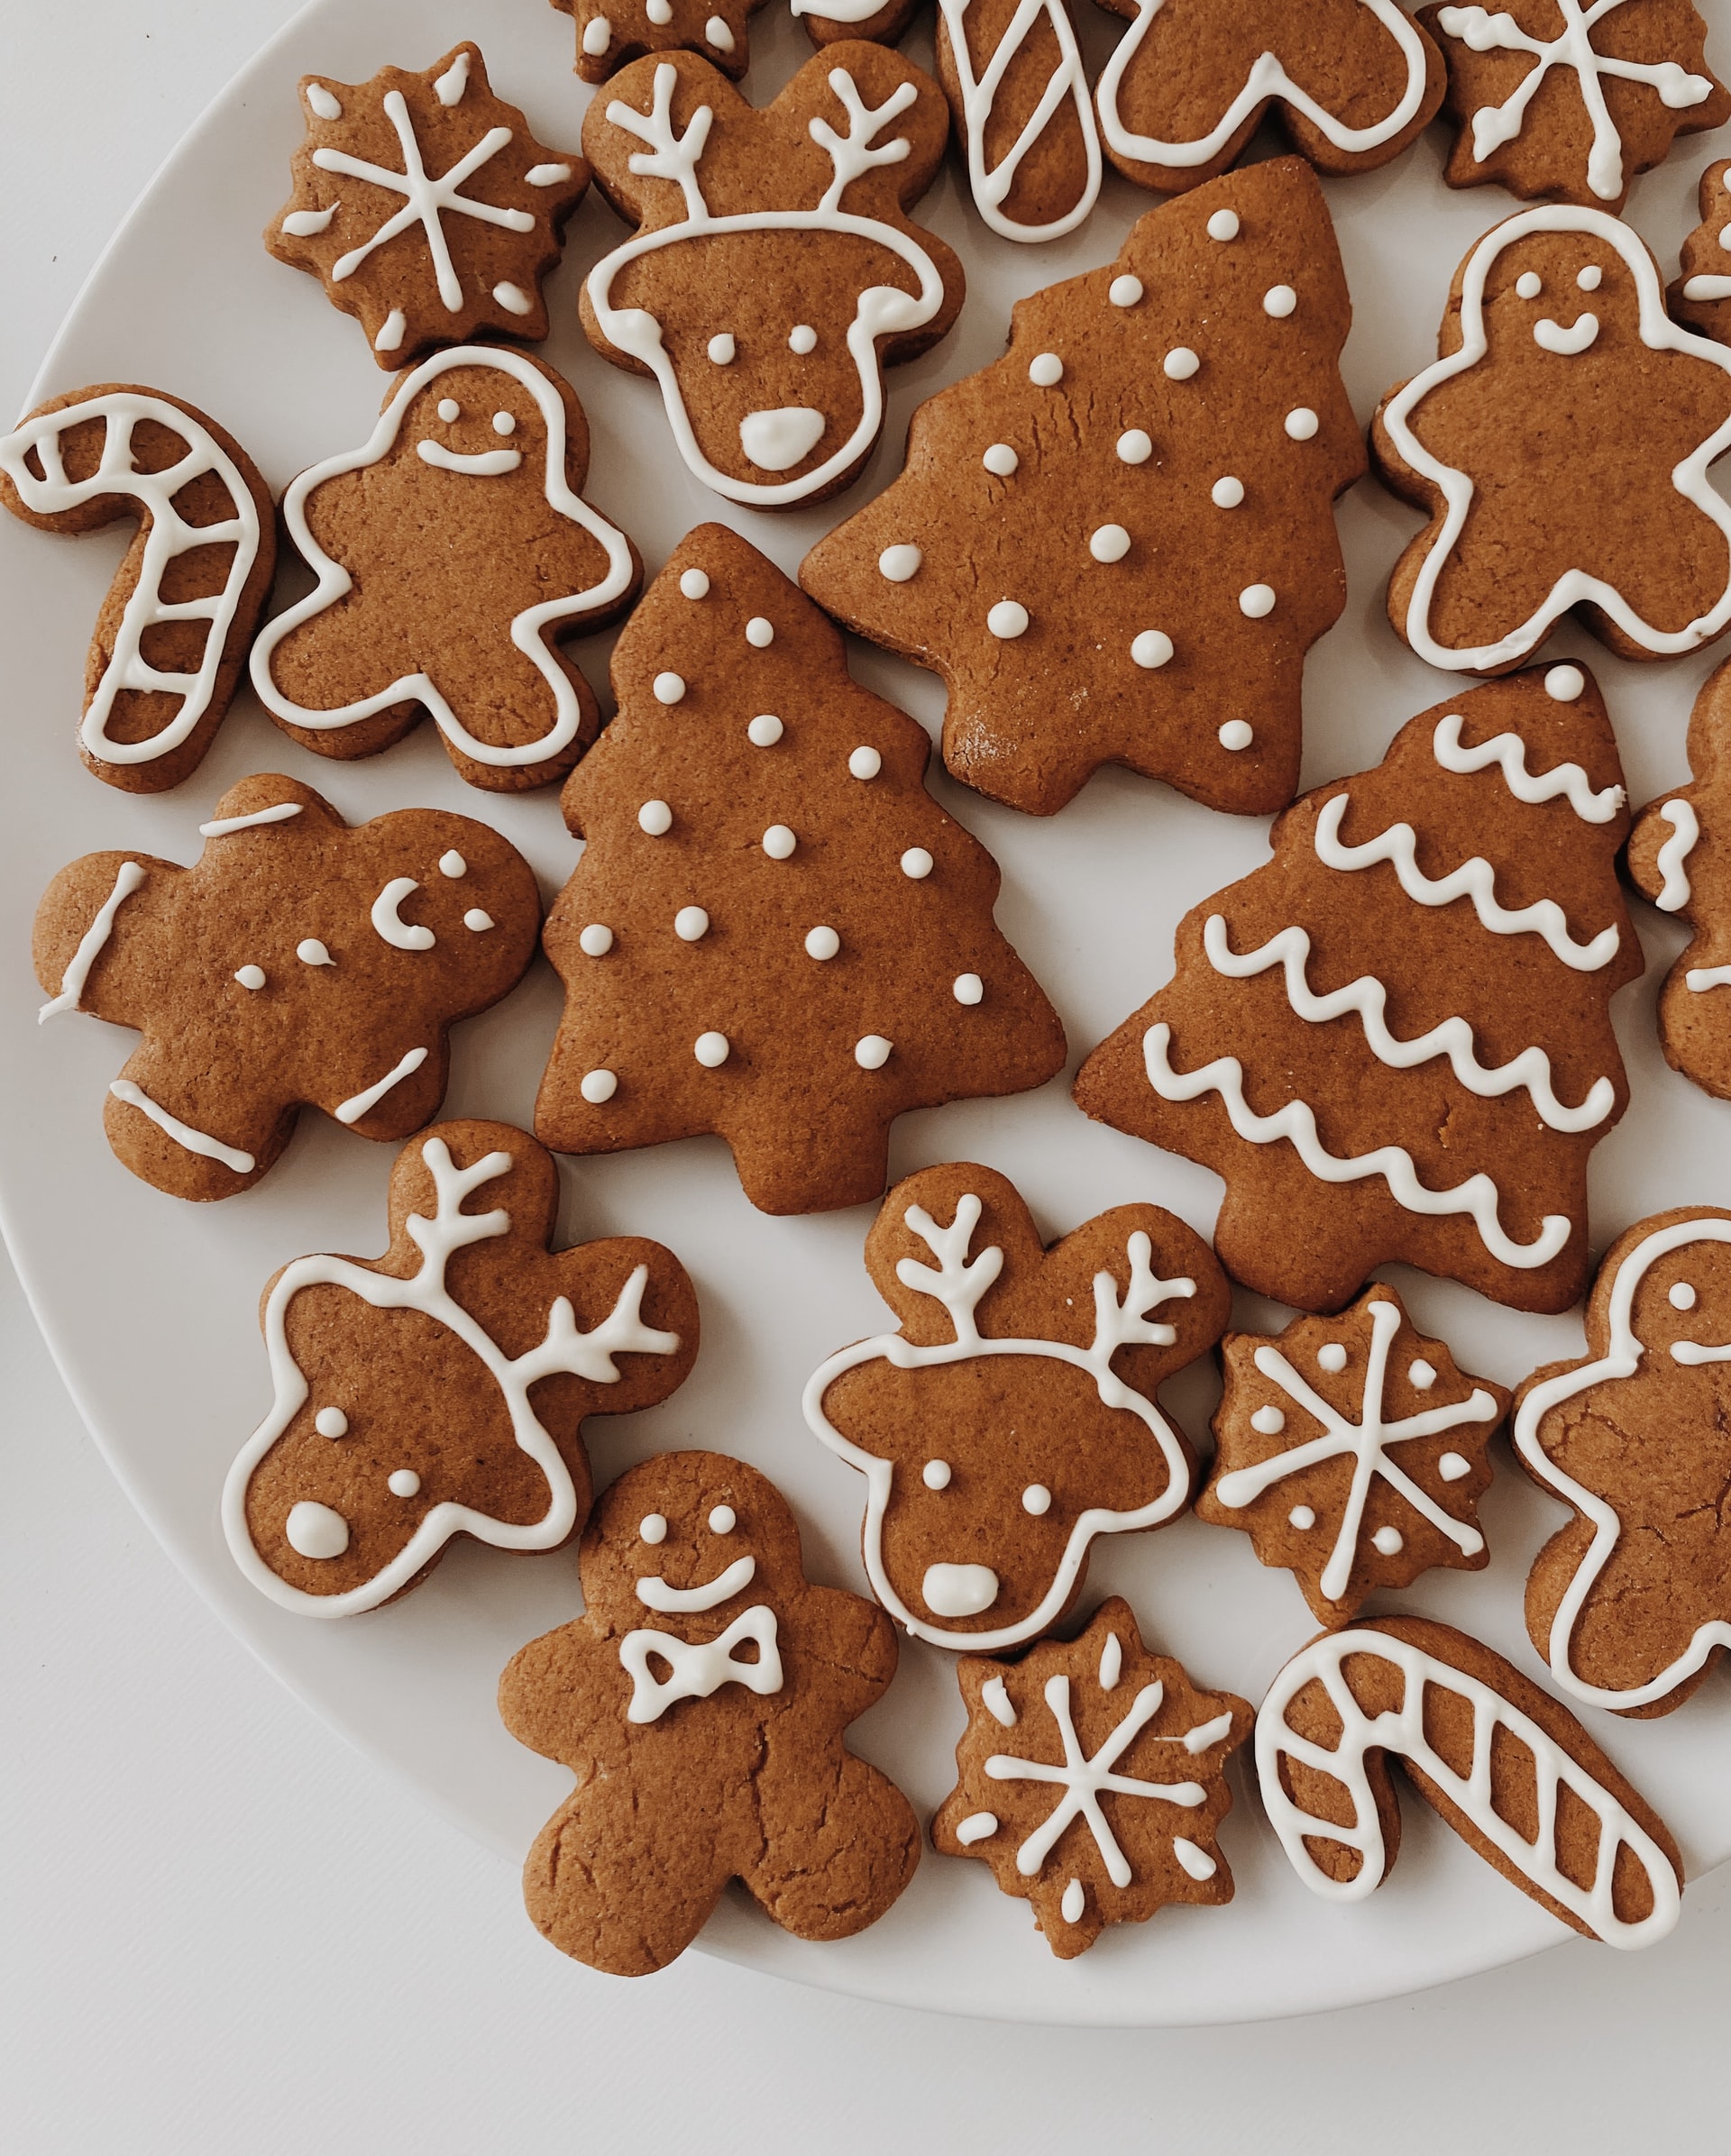 Various Gingerbread cookies Man Christmas Trees